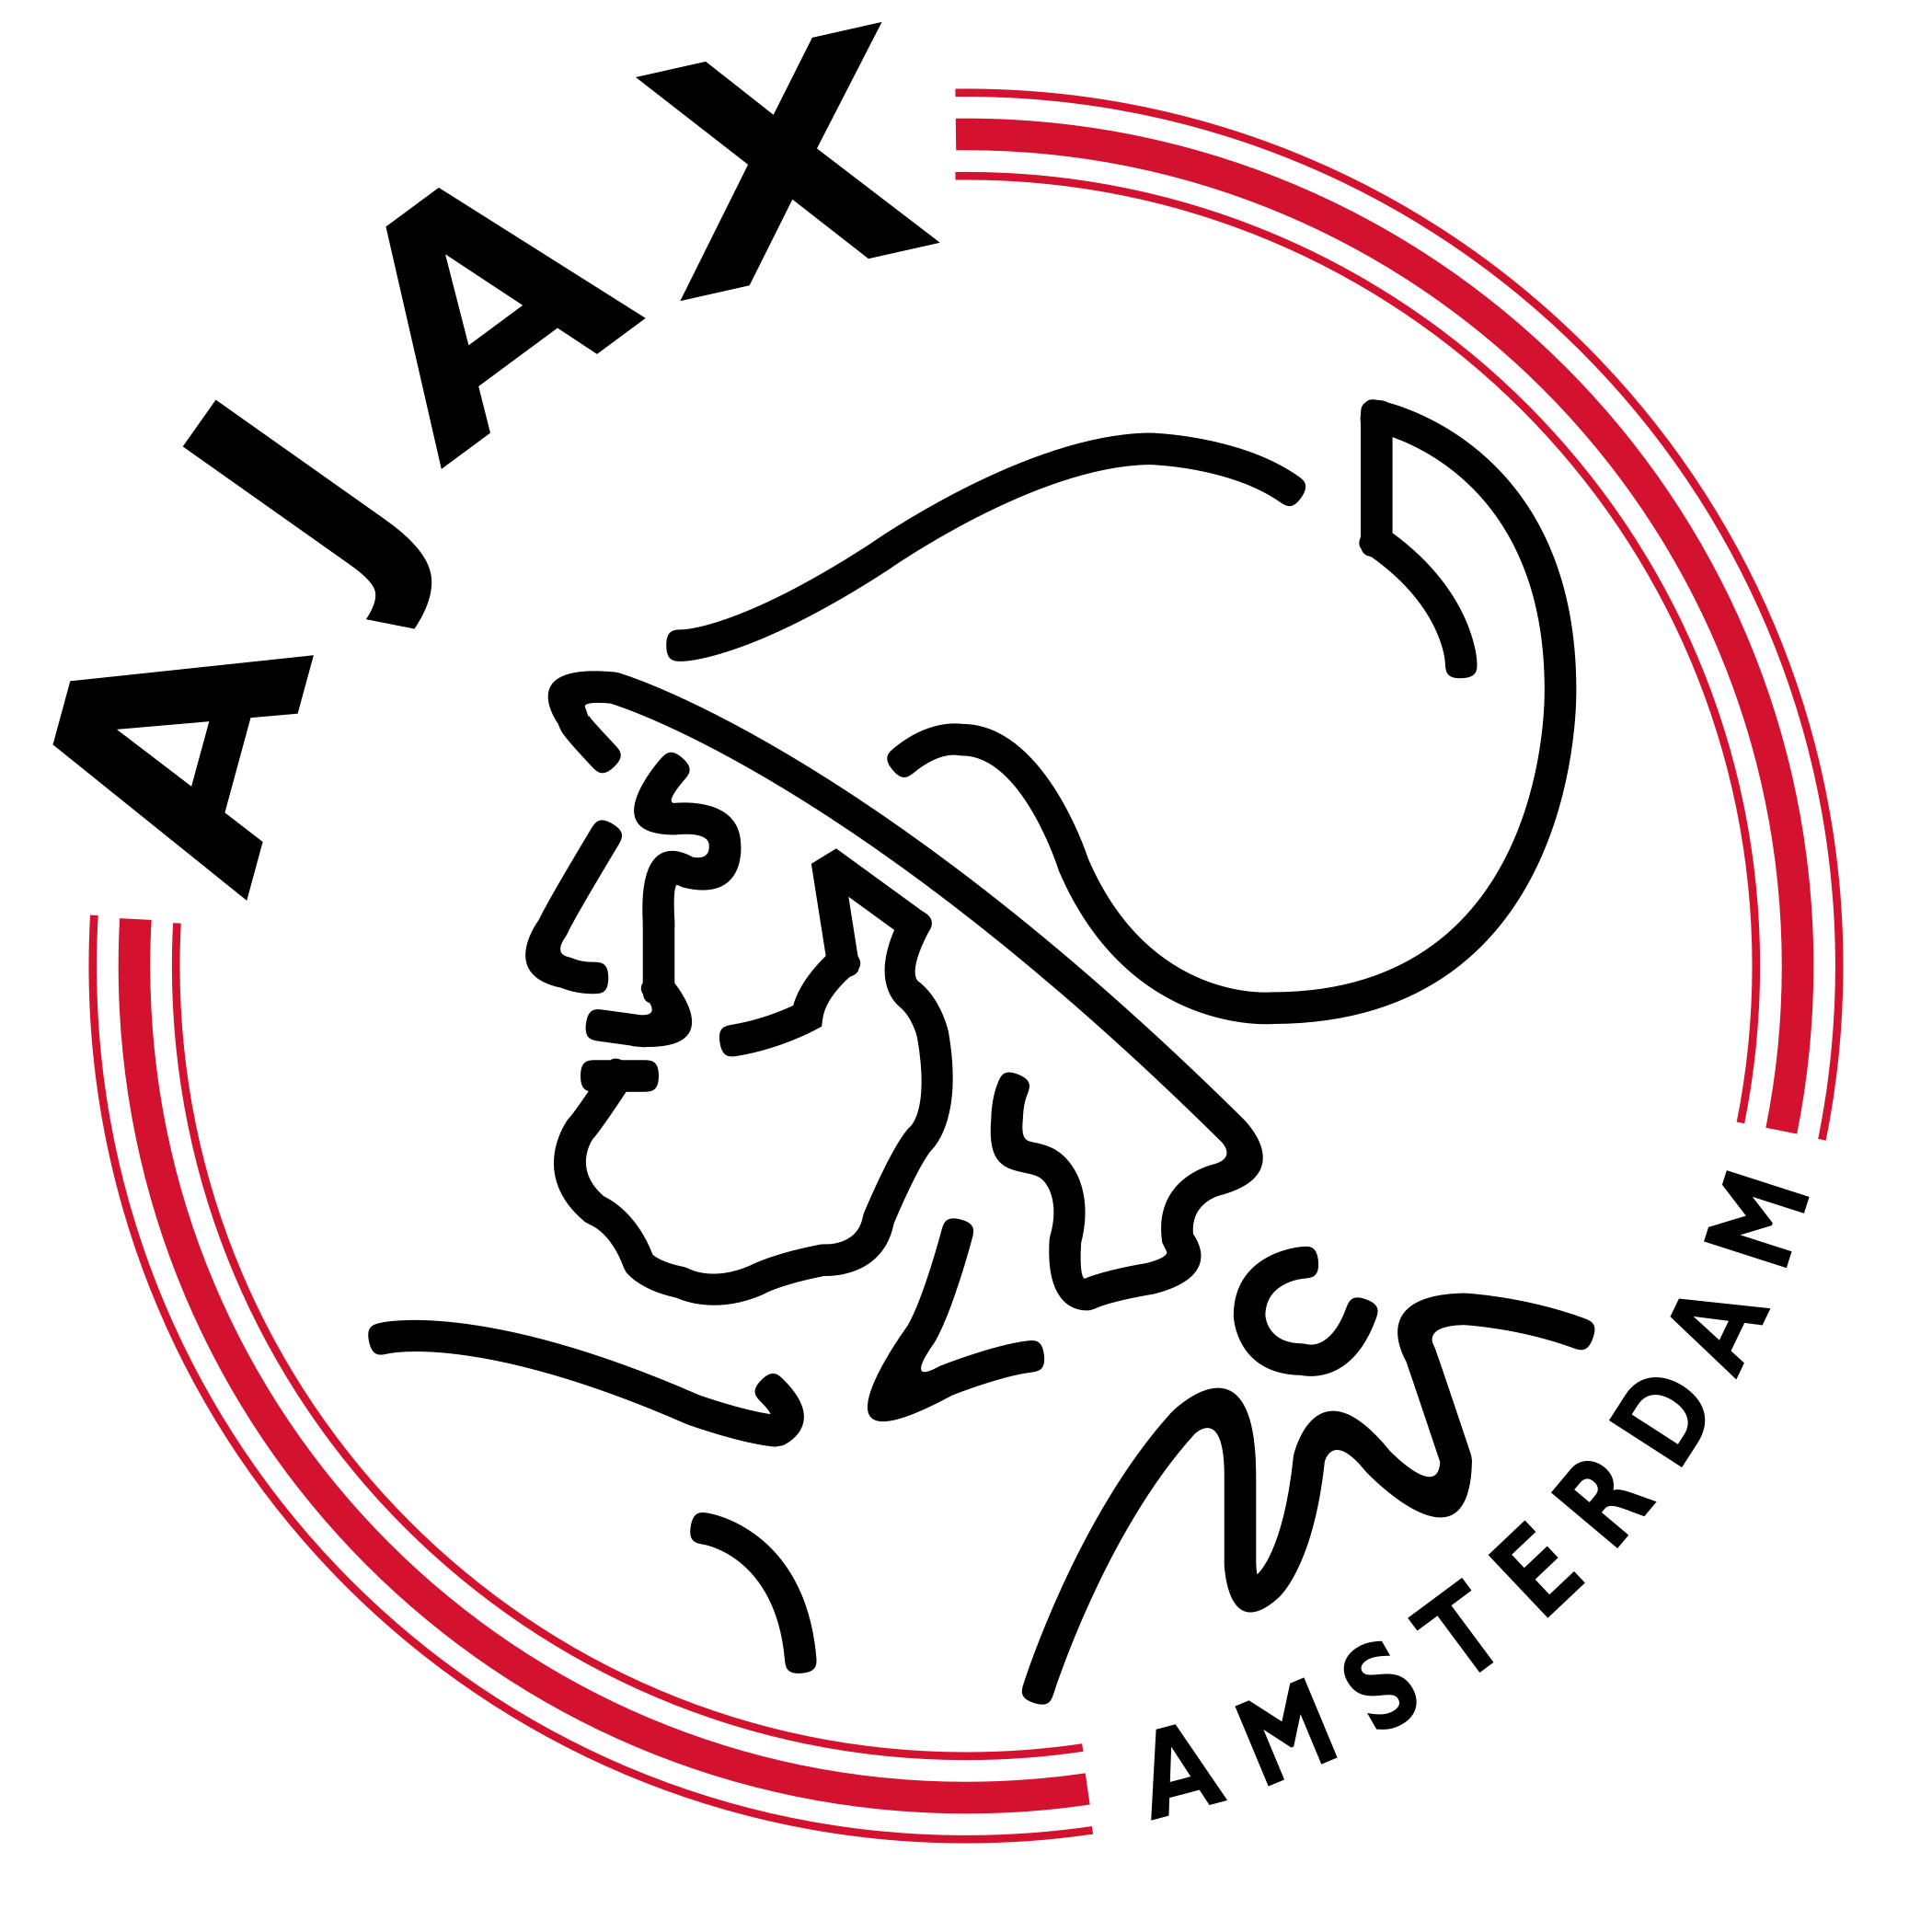 Ajax Fc logo escudo.